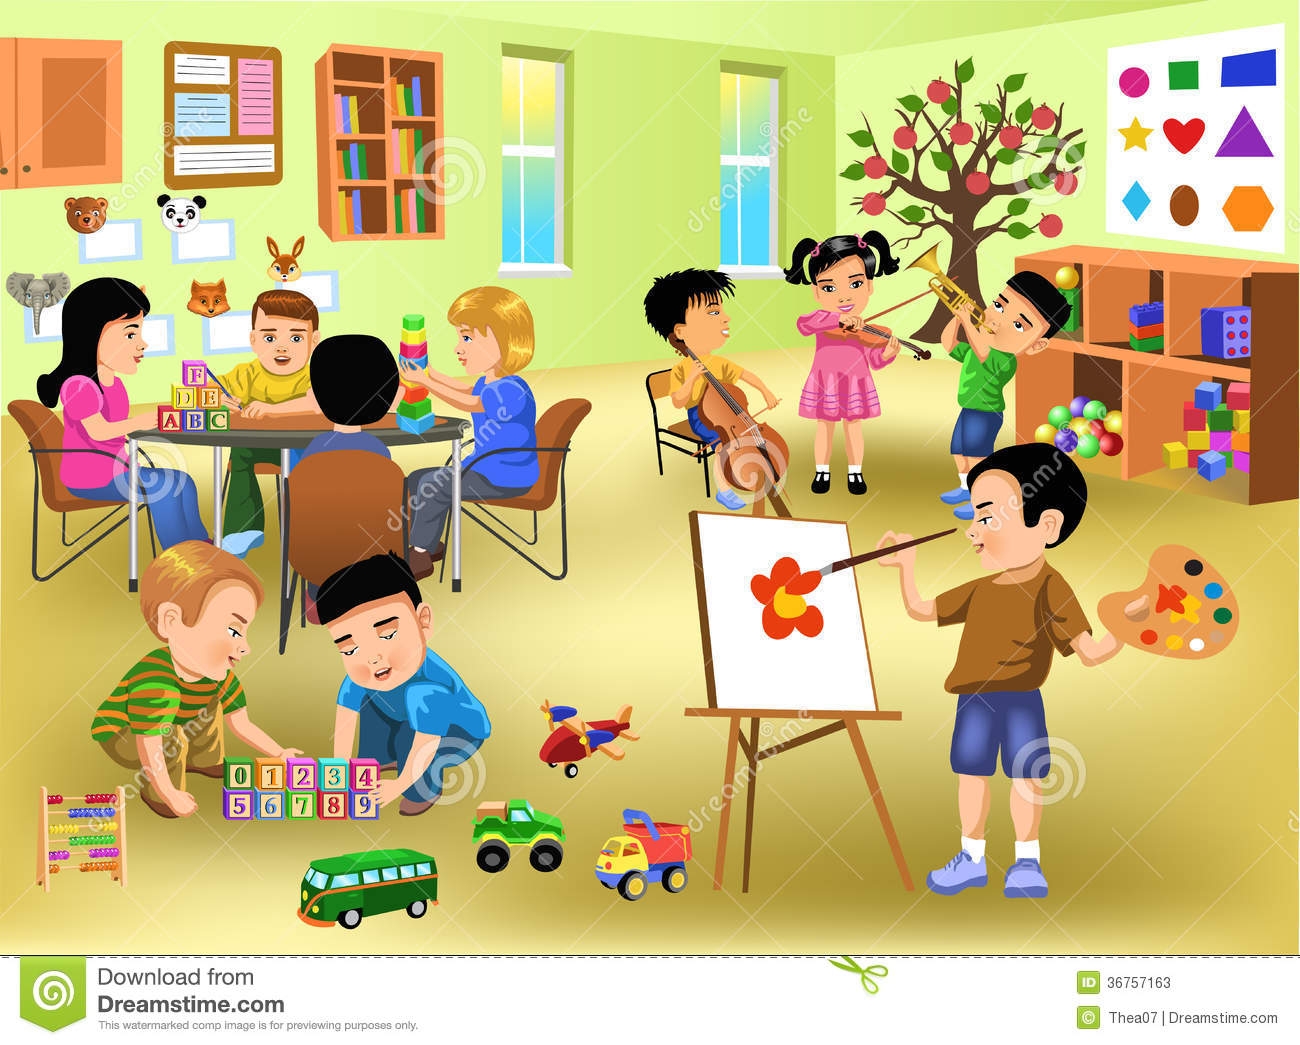 Preschool classroom clipart.